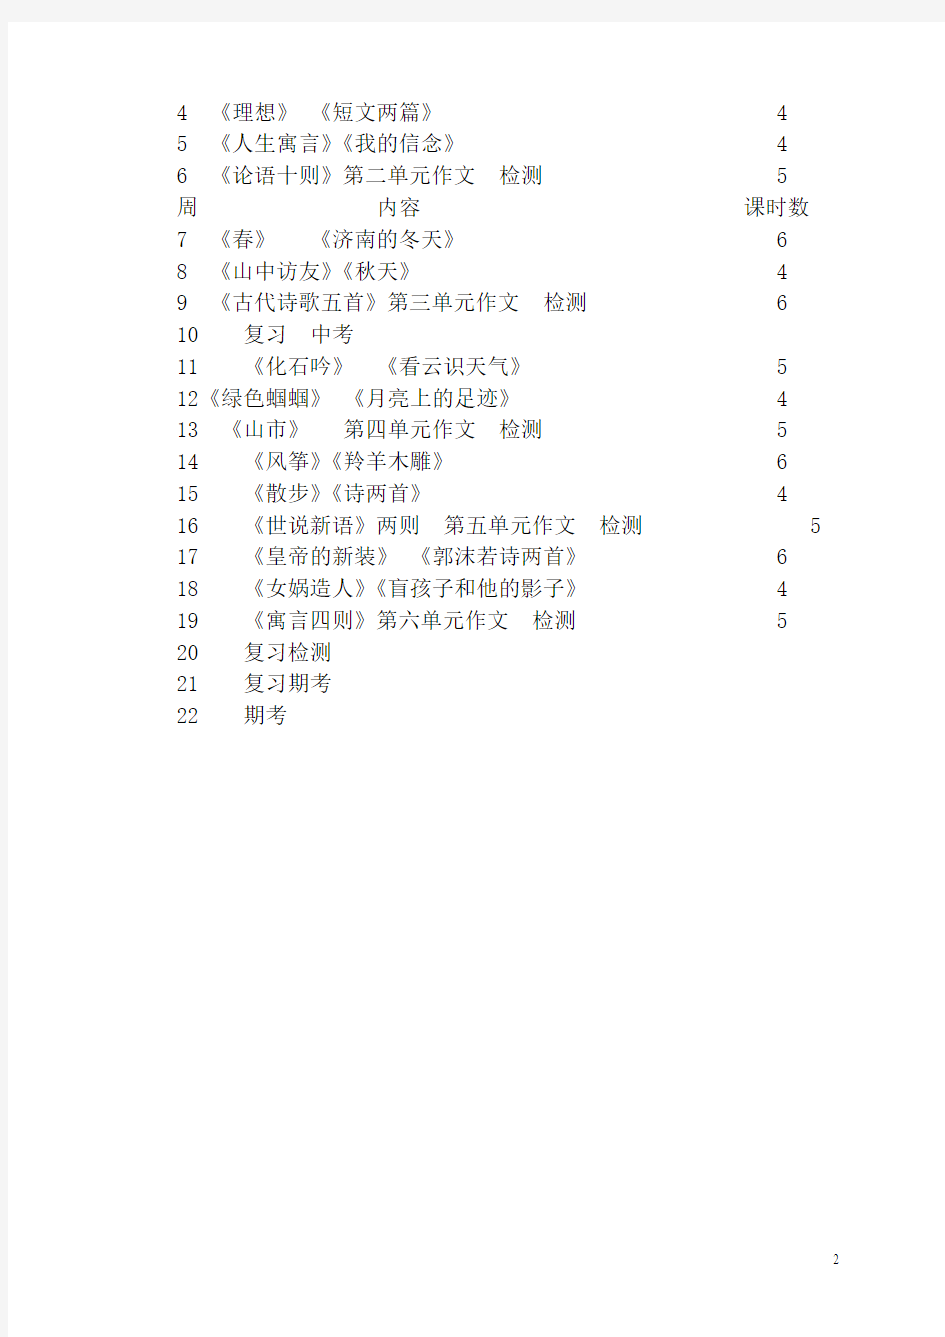 人教版初中语文七年级上册教案全集(123页)